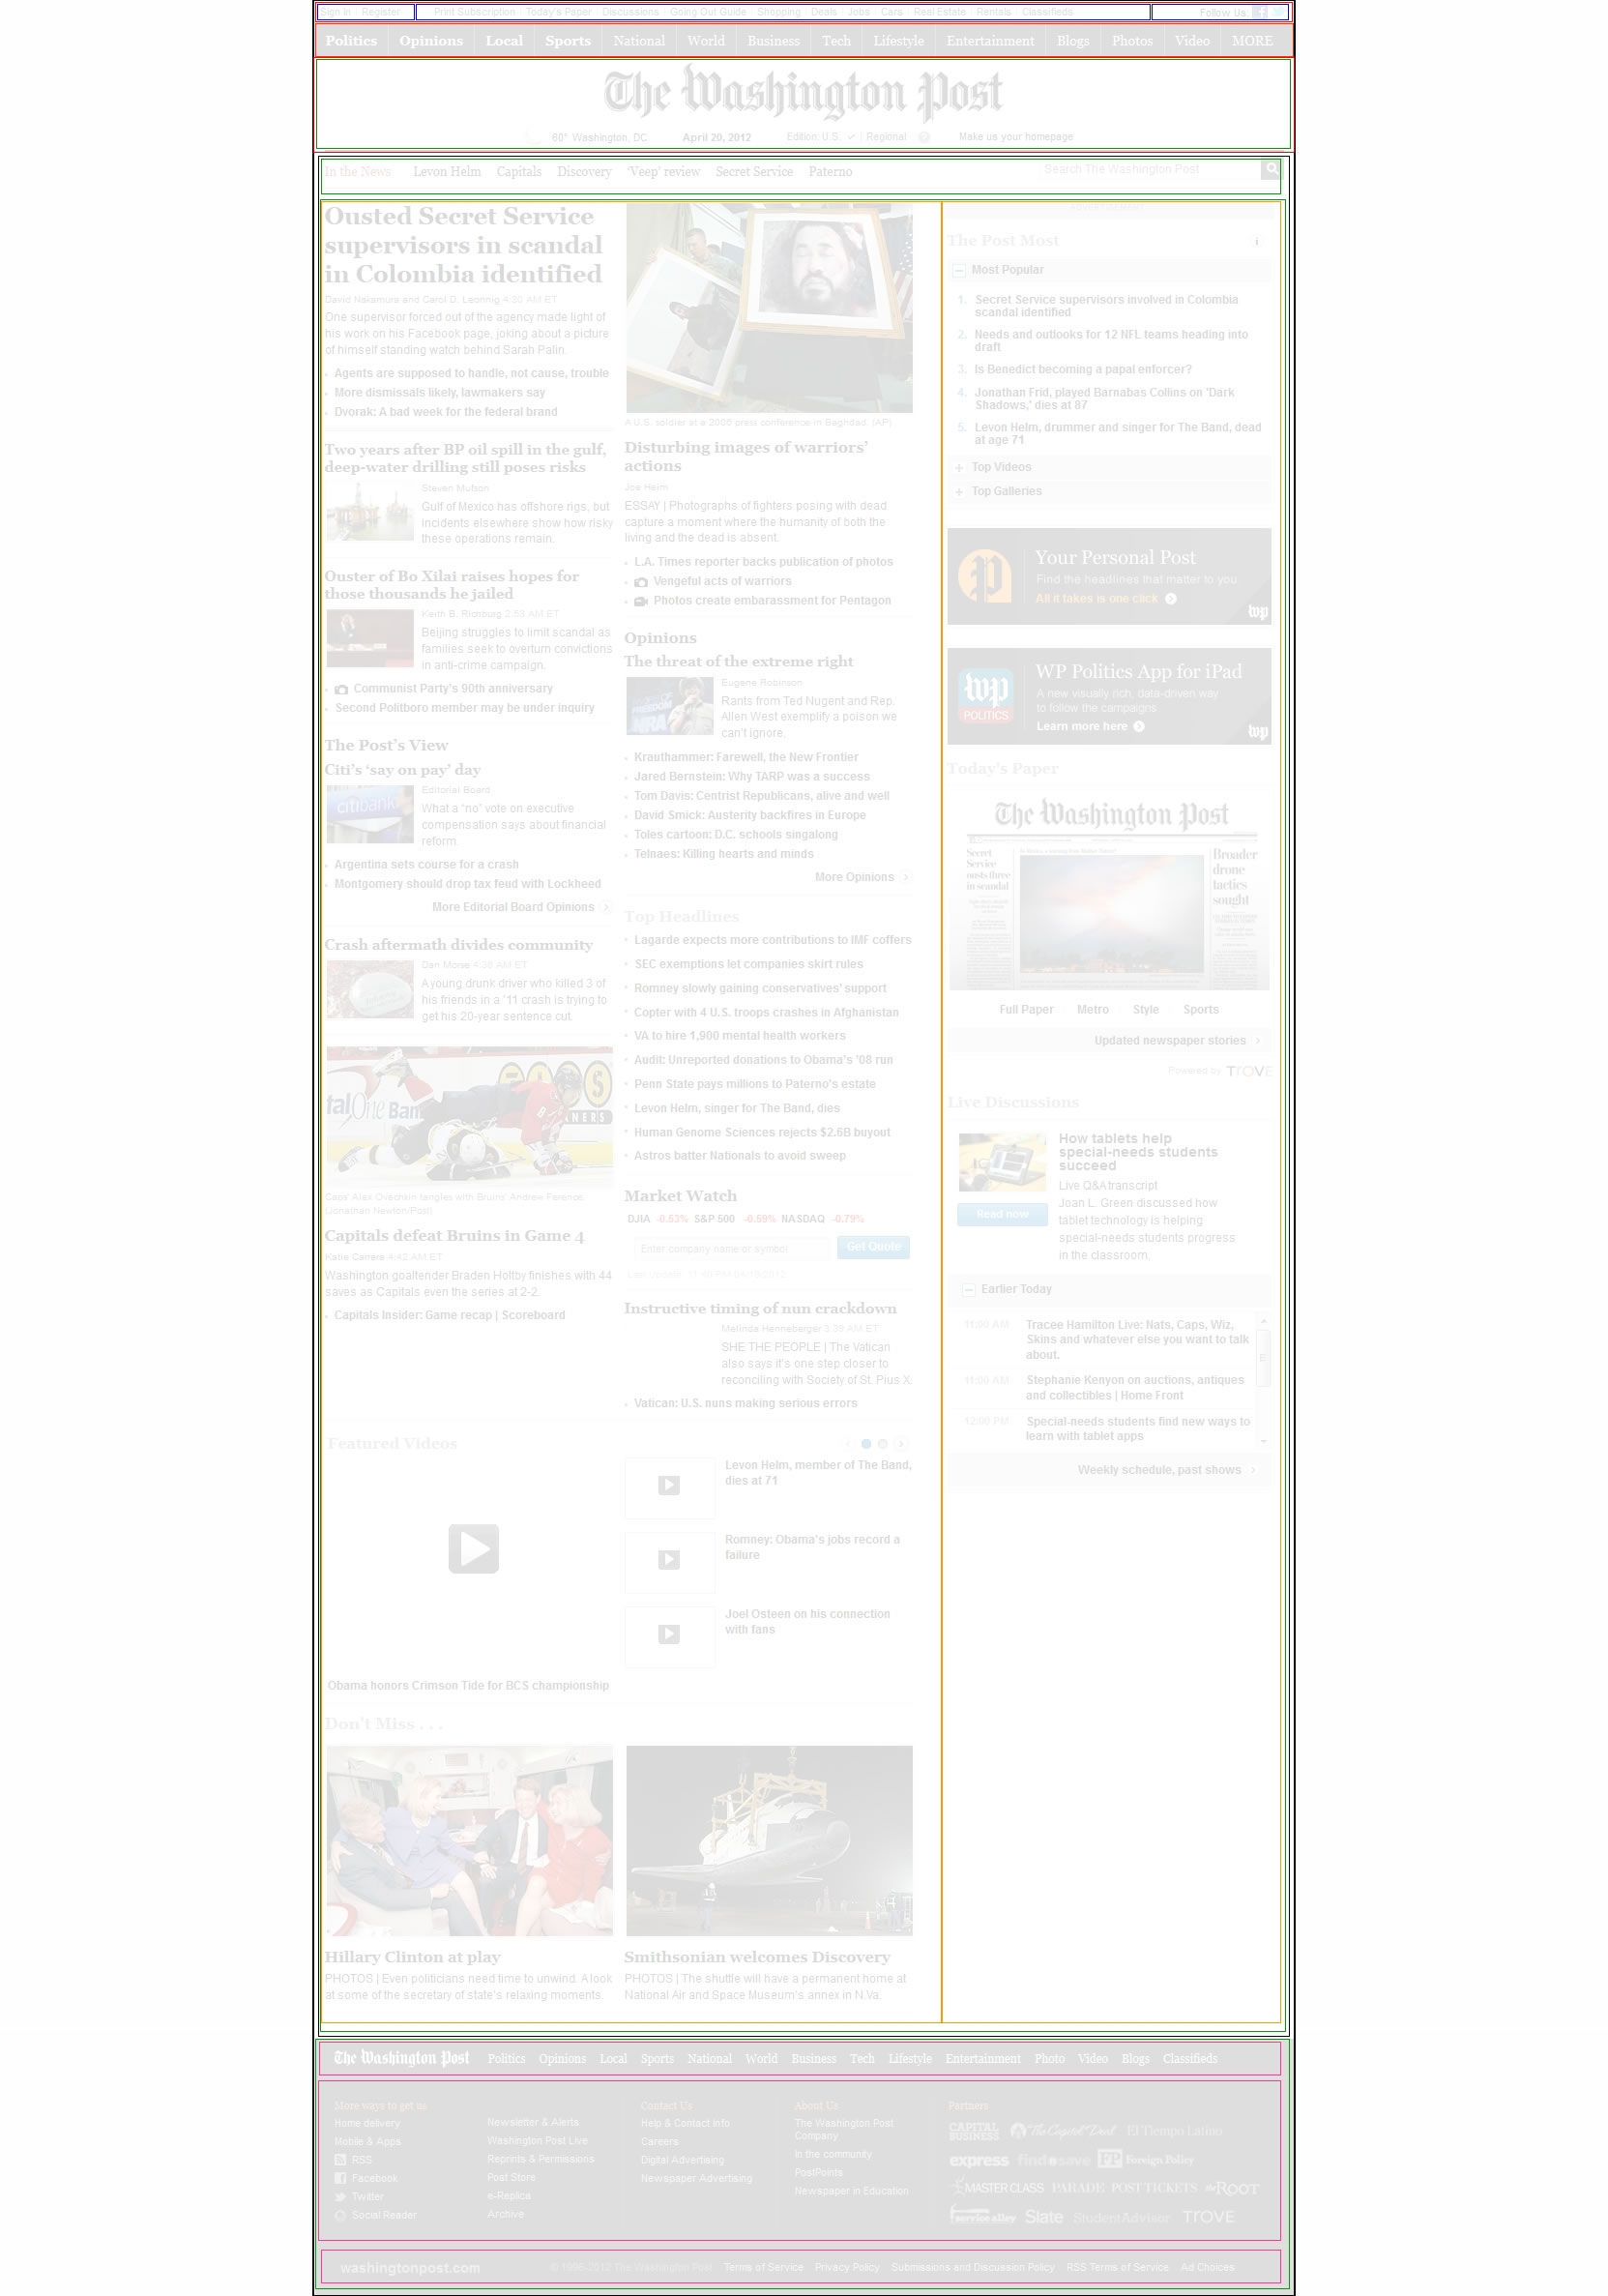 Posible layout del nuevo periodico